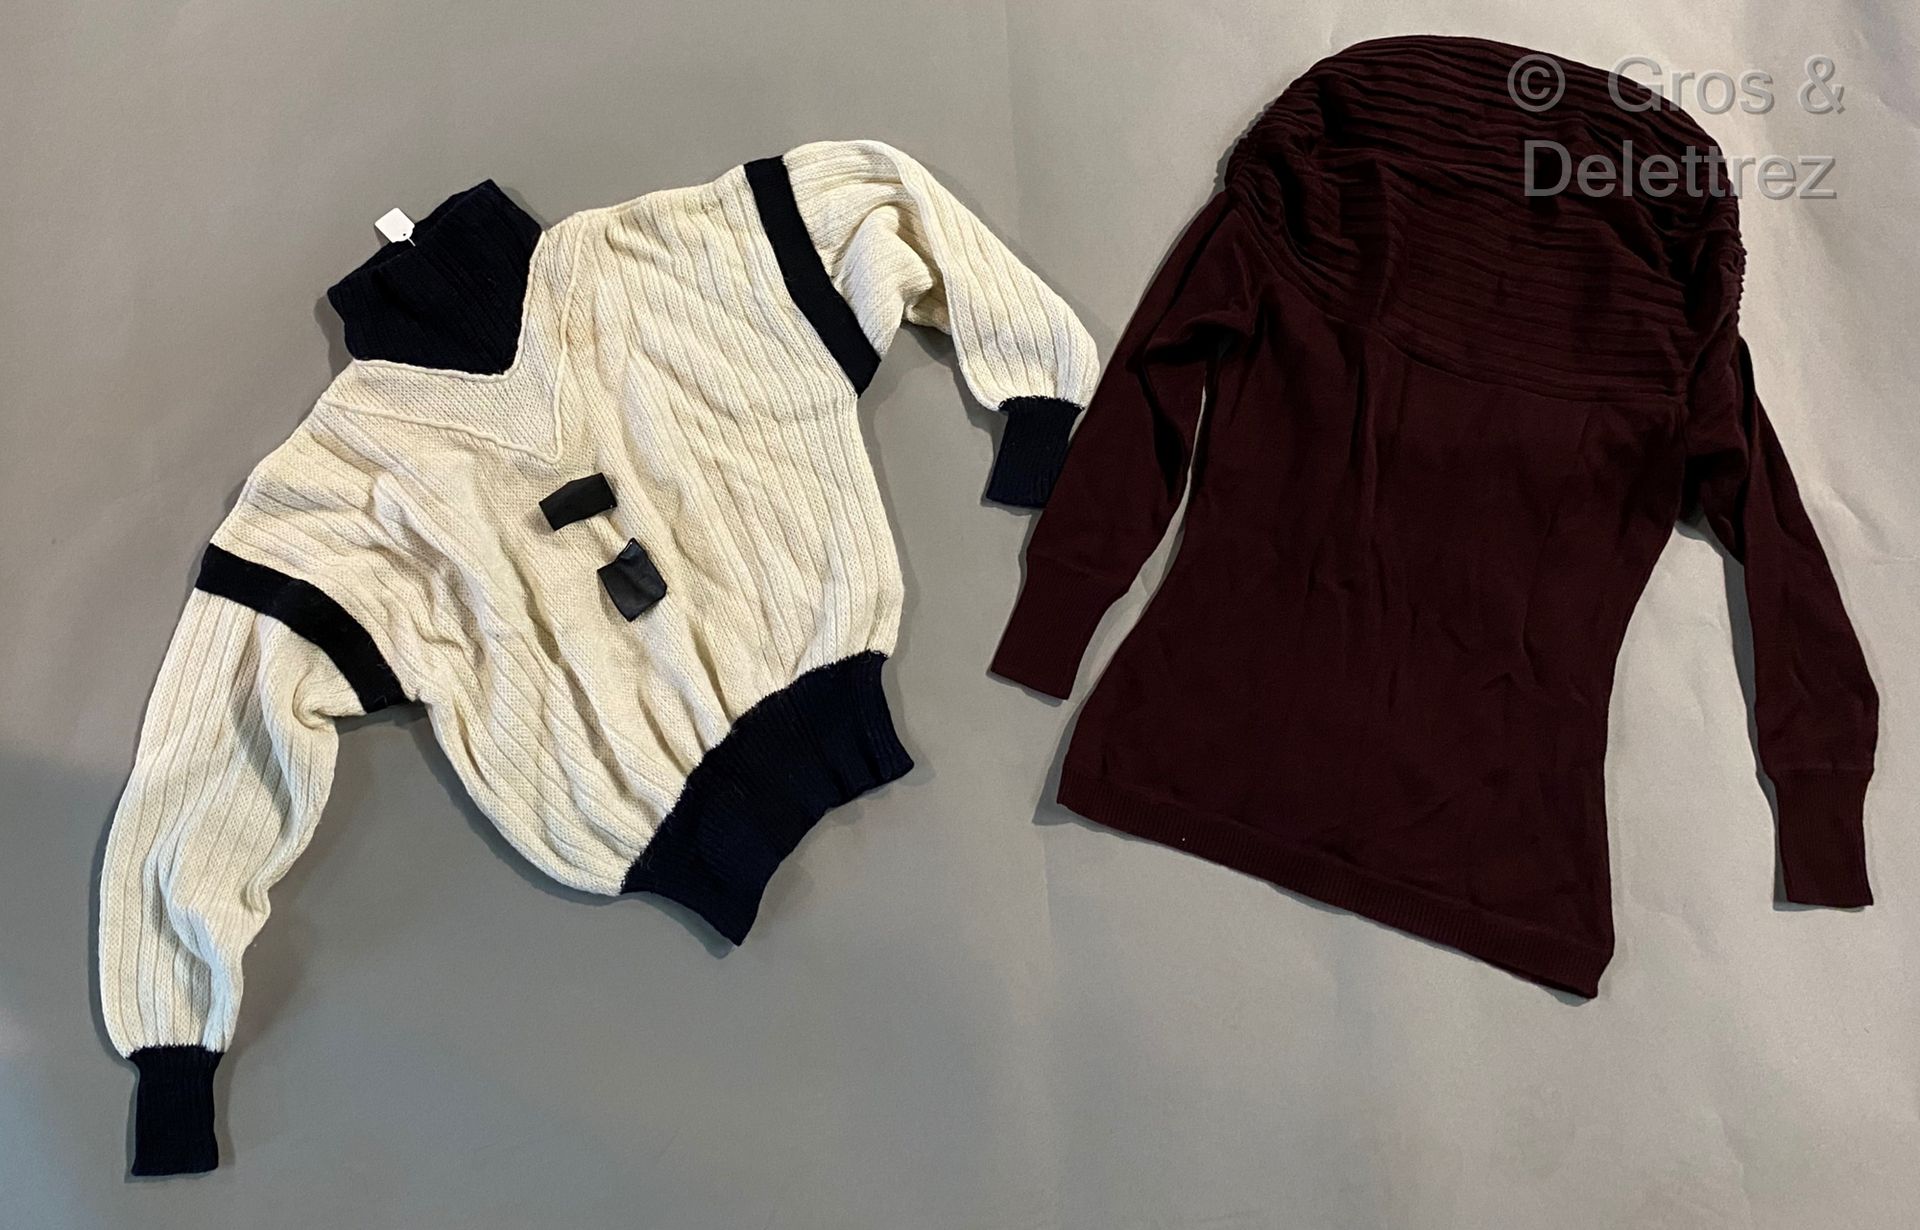 Null CLAUDE MONTANA 拍品包括一件黑白相间的羊毛毛衣，一件酒红色羊毛毛衣，一件灰色毛衣，一件卡其色毛衣和一件驼色开衫（污渍）。